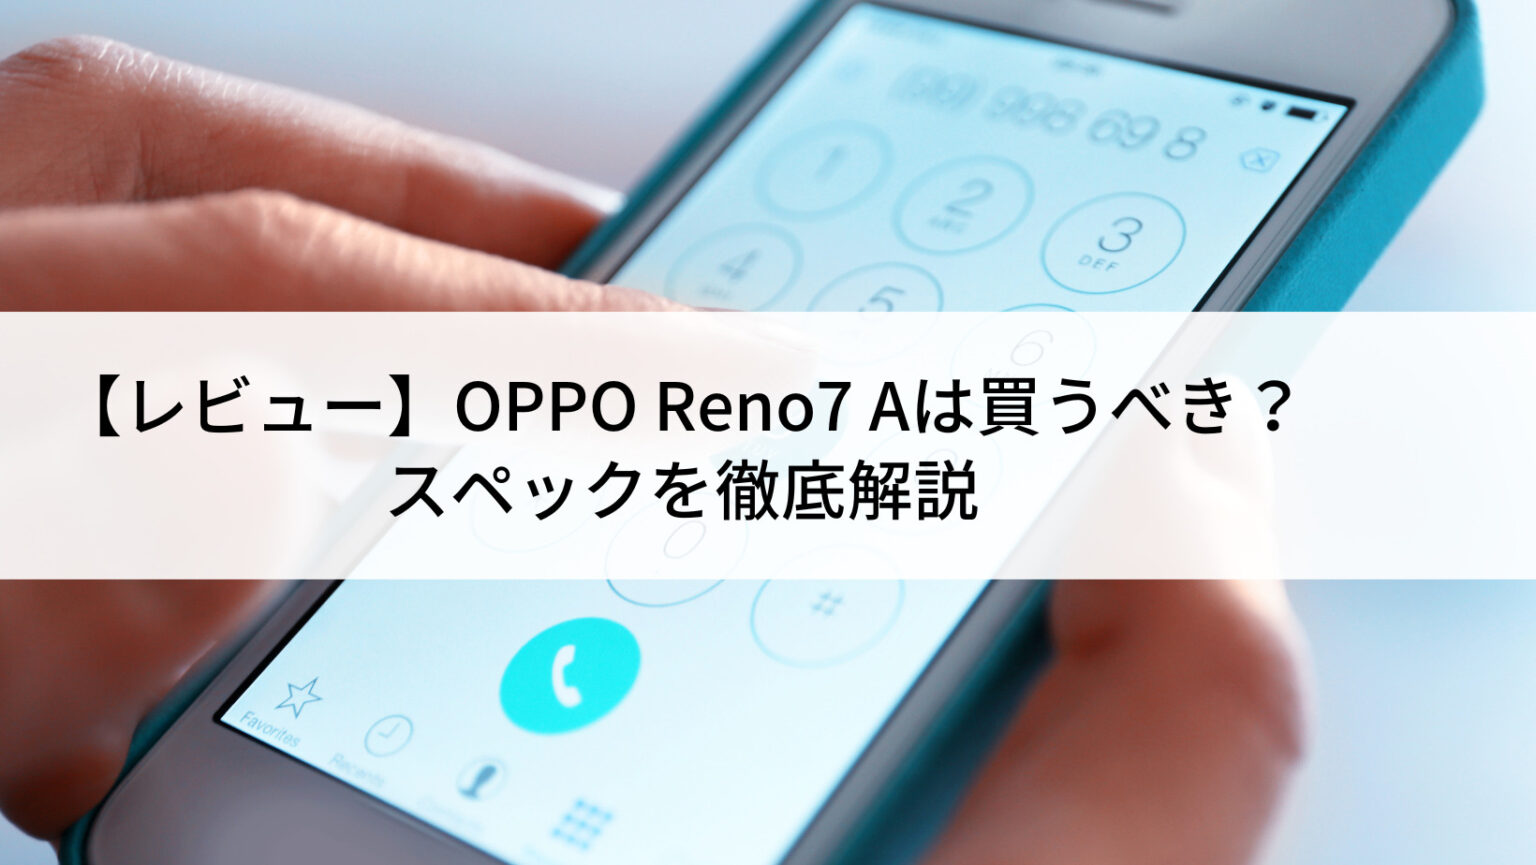 スマートフォン/携帯電話 スマートフォン本体 OPPO Reno7 Aの中古 | SIMフリーの中古スマホなら【にこスマ】